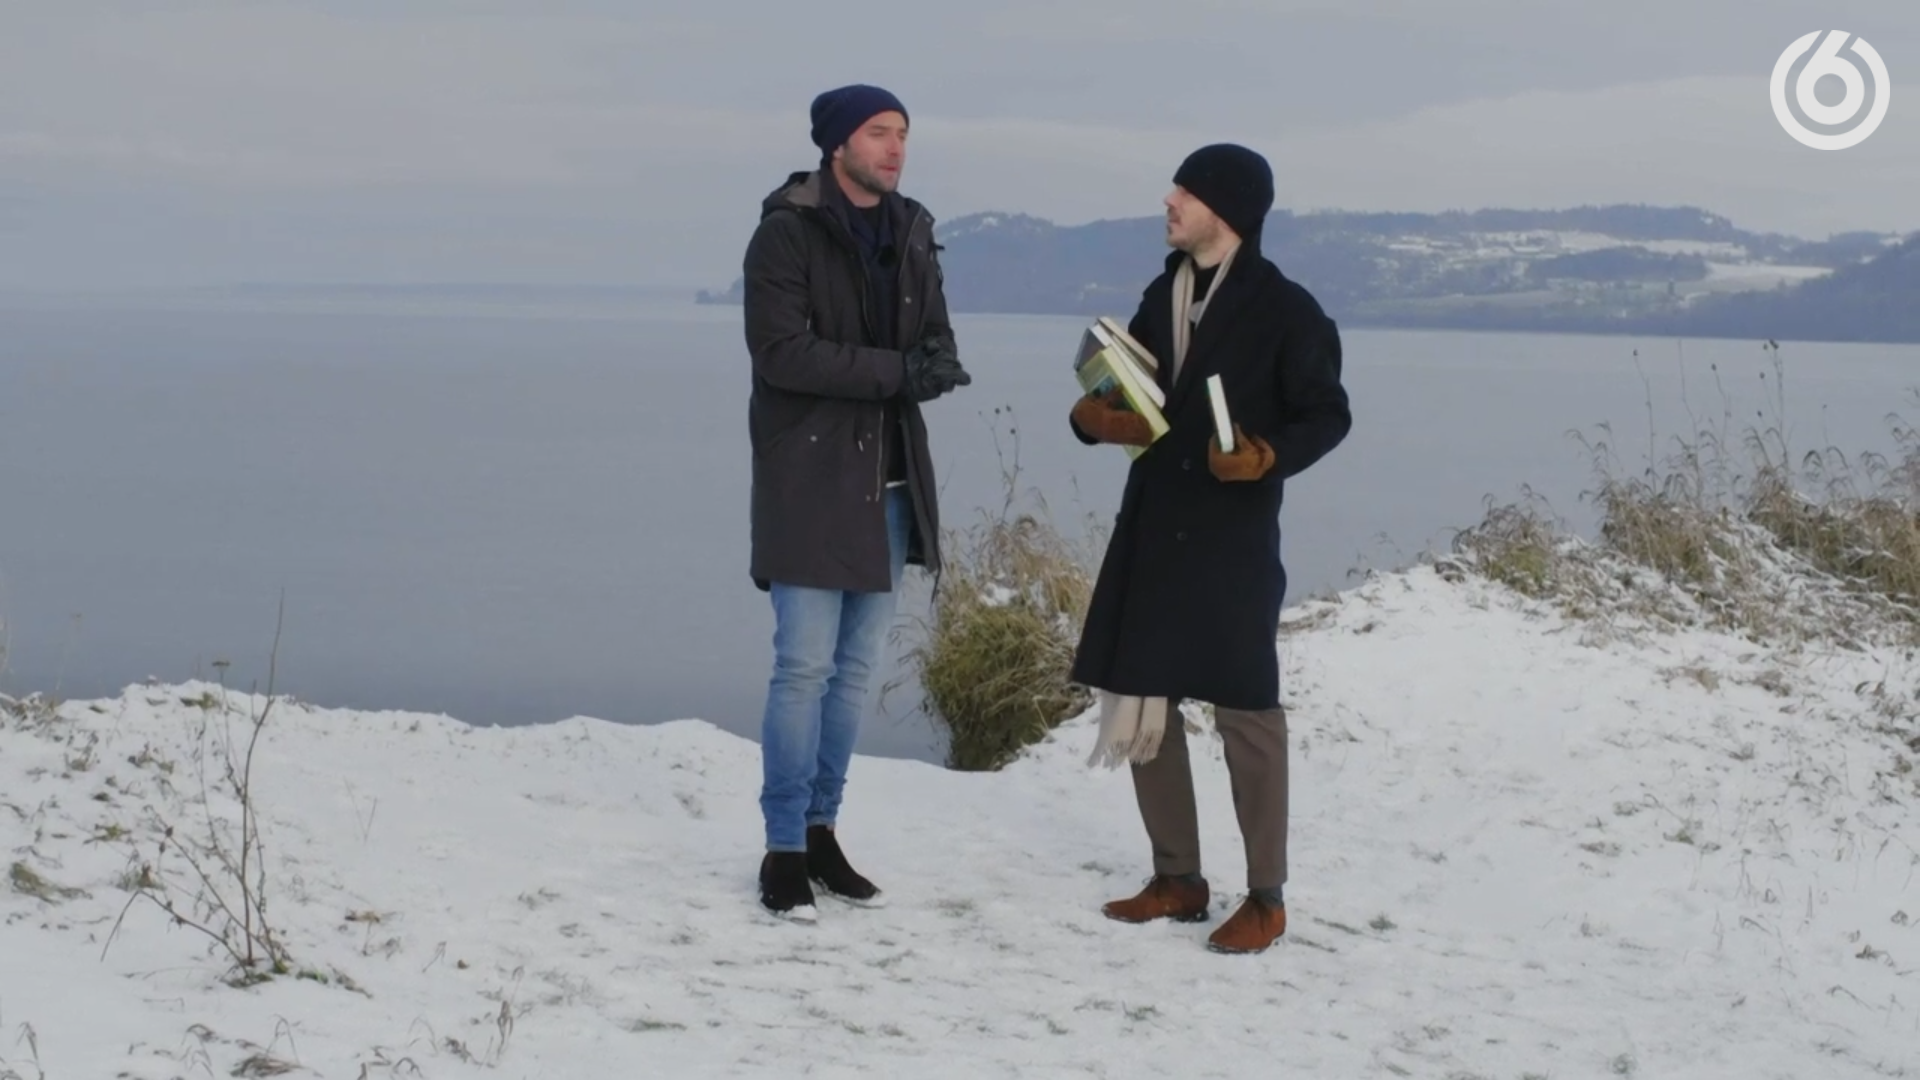 Chevaleresk episode 4, Season 2 – Småland